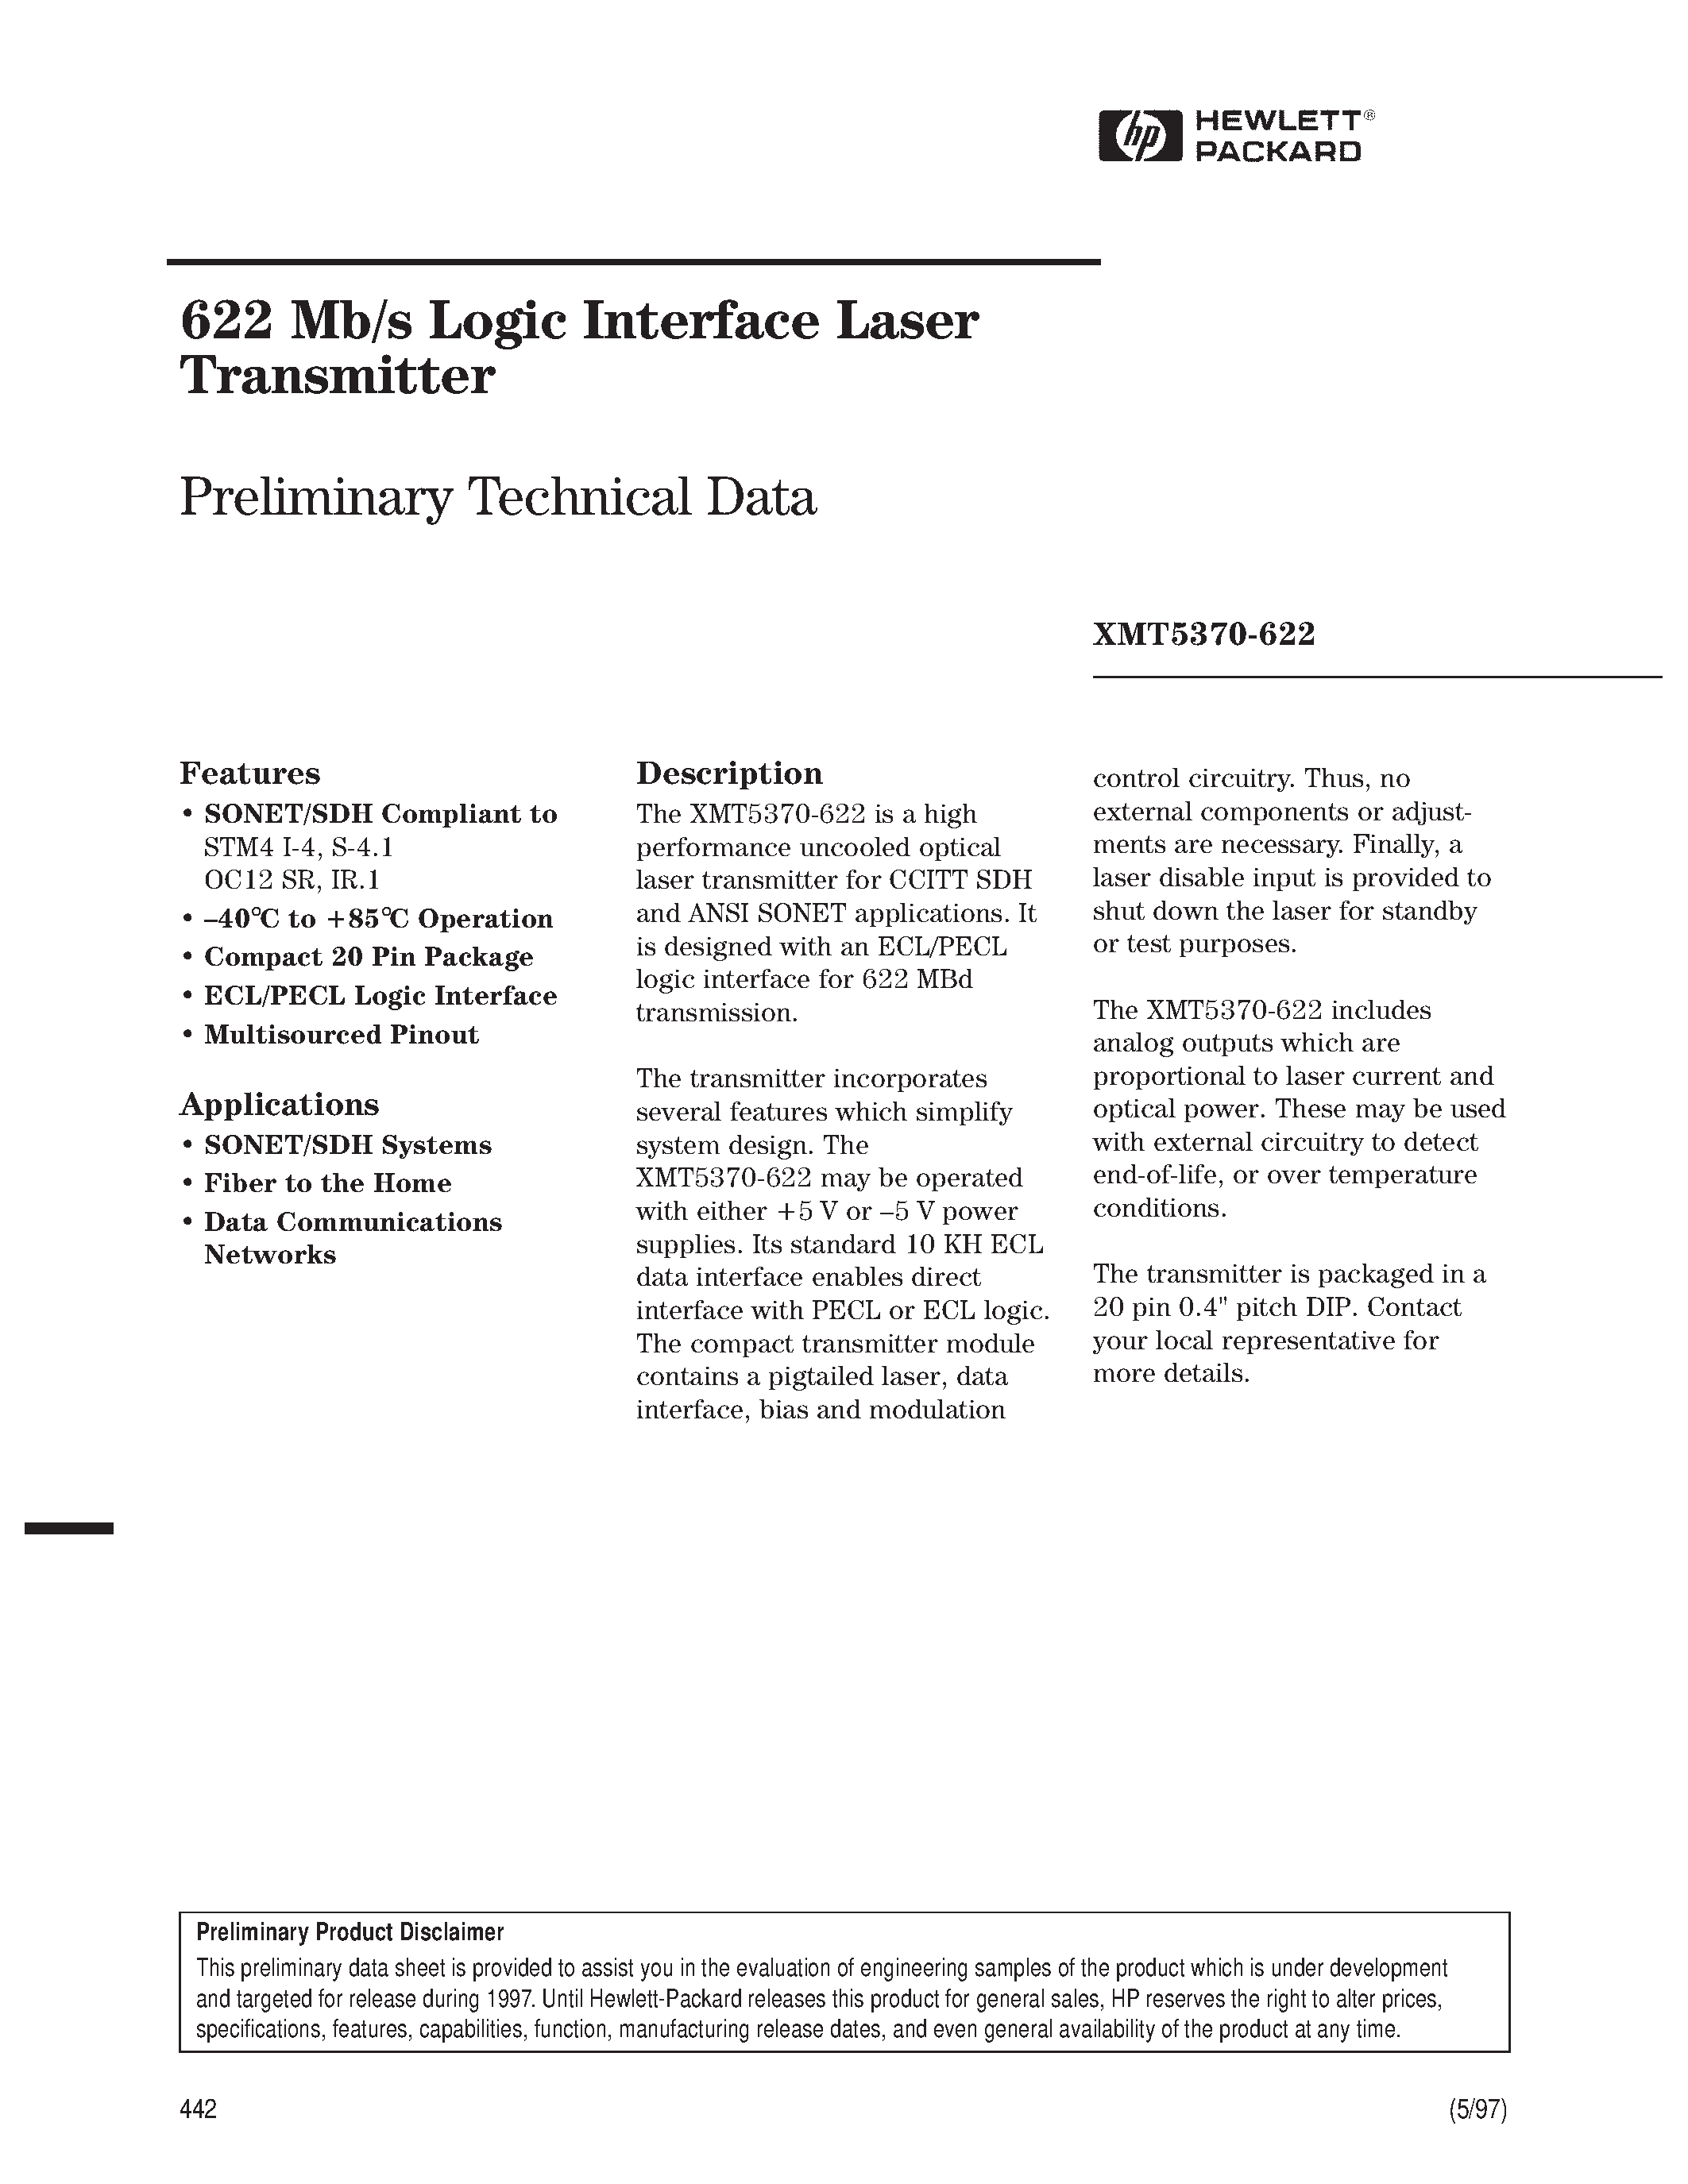 Datasheet XMT5160-155 - 622 Mb/s Logic Interface Laser Transmitter page 1